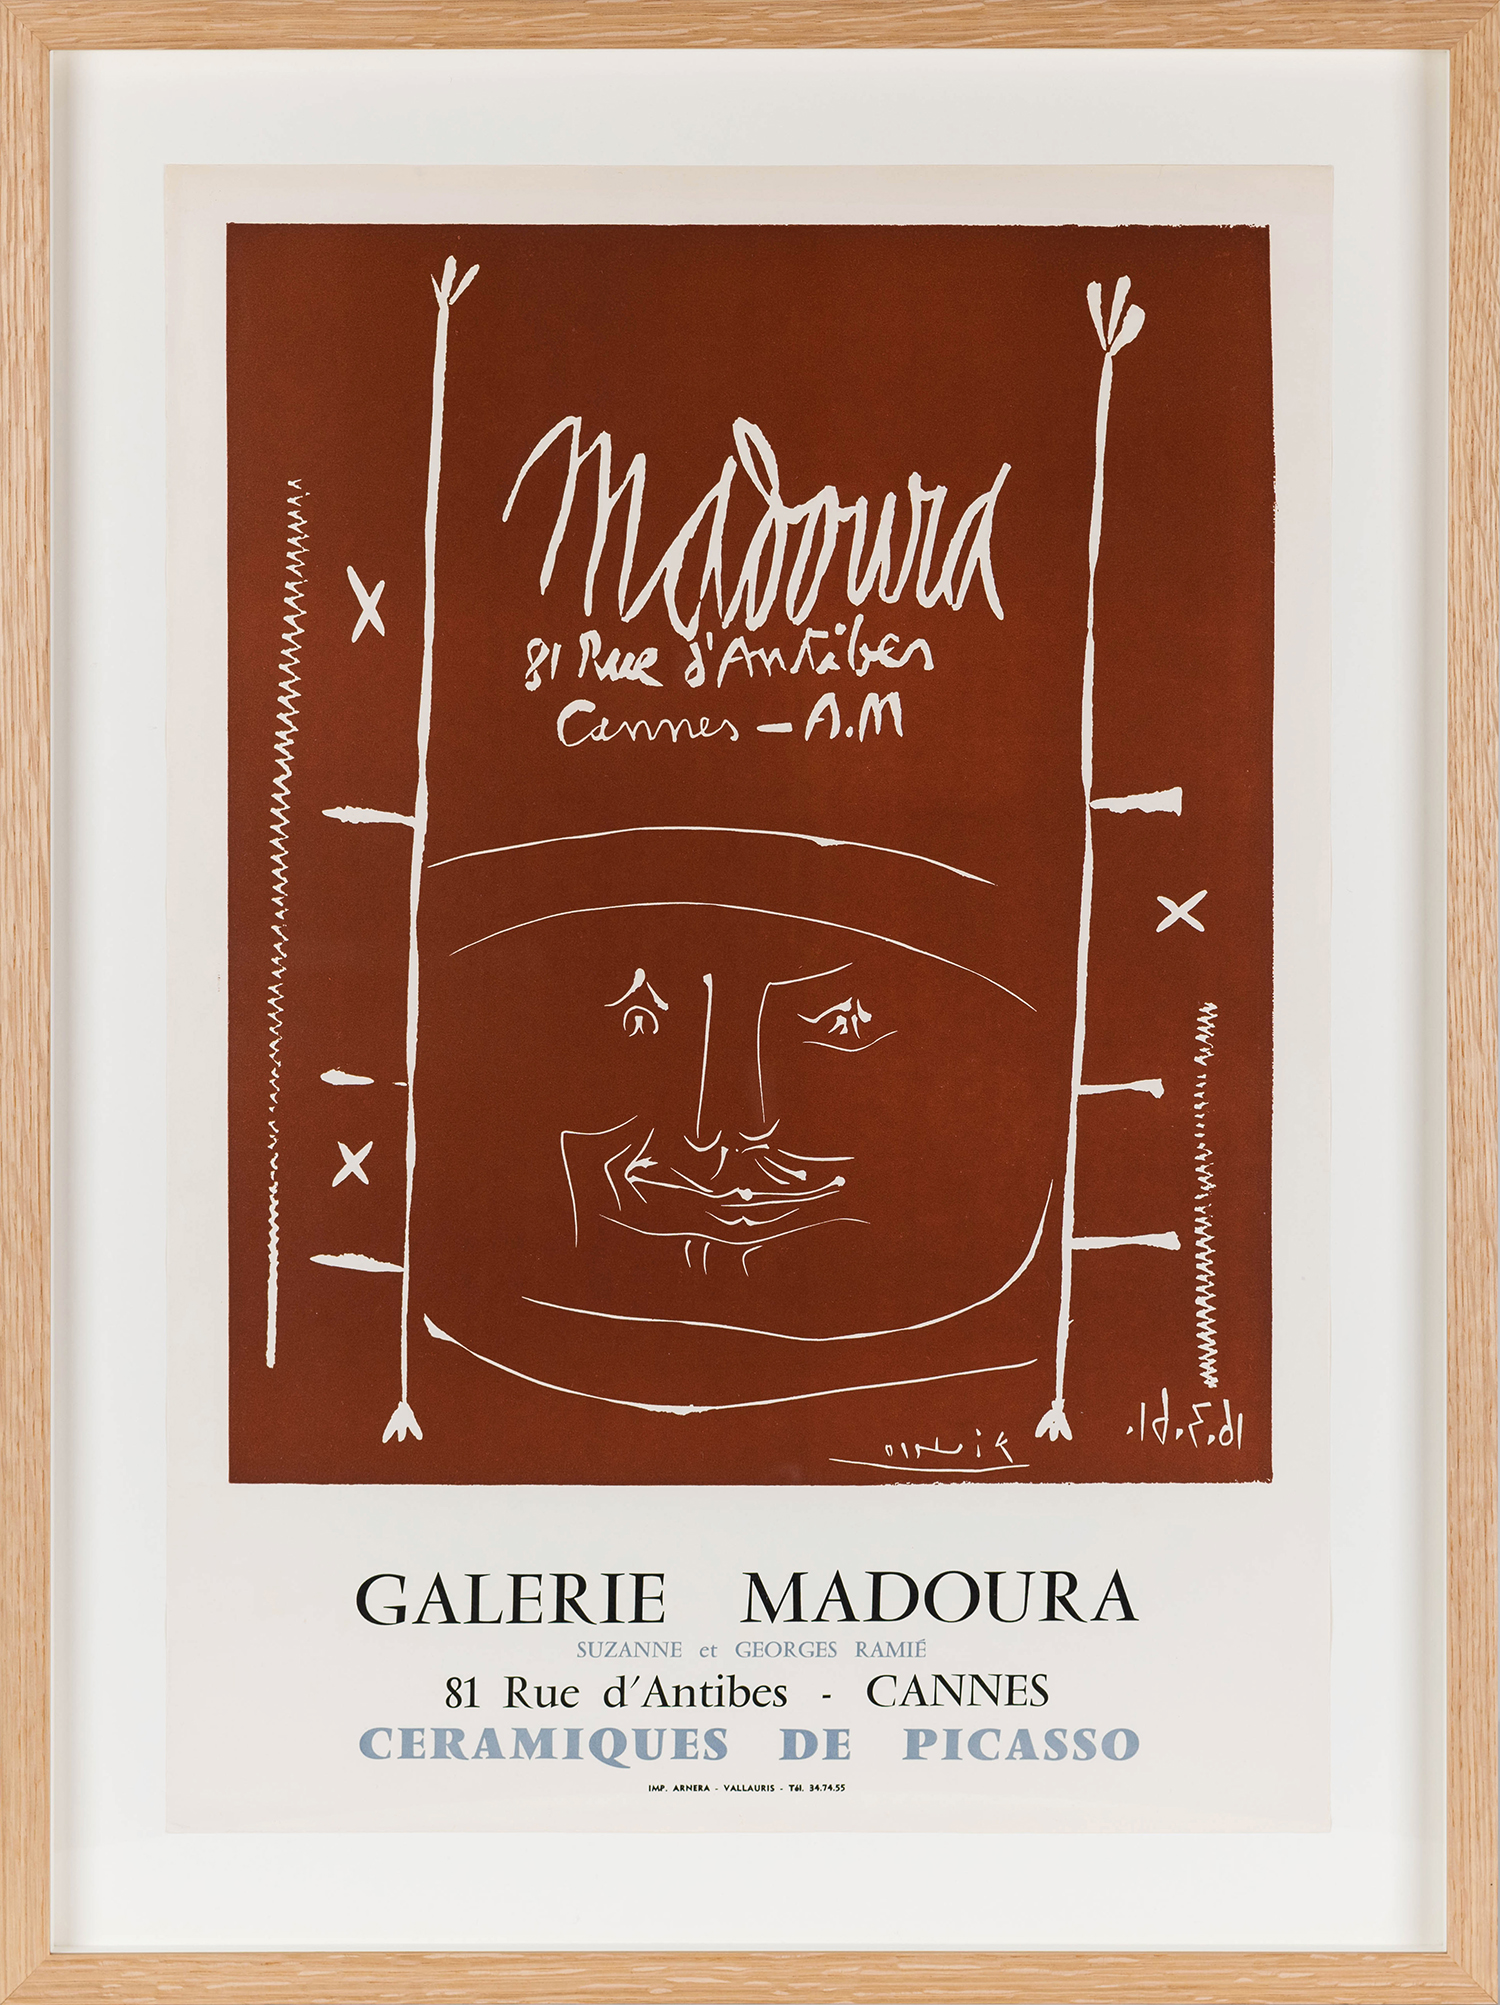 Galerie Madoura Ceramiques de Picasso, 1961